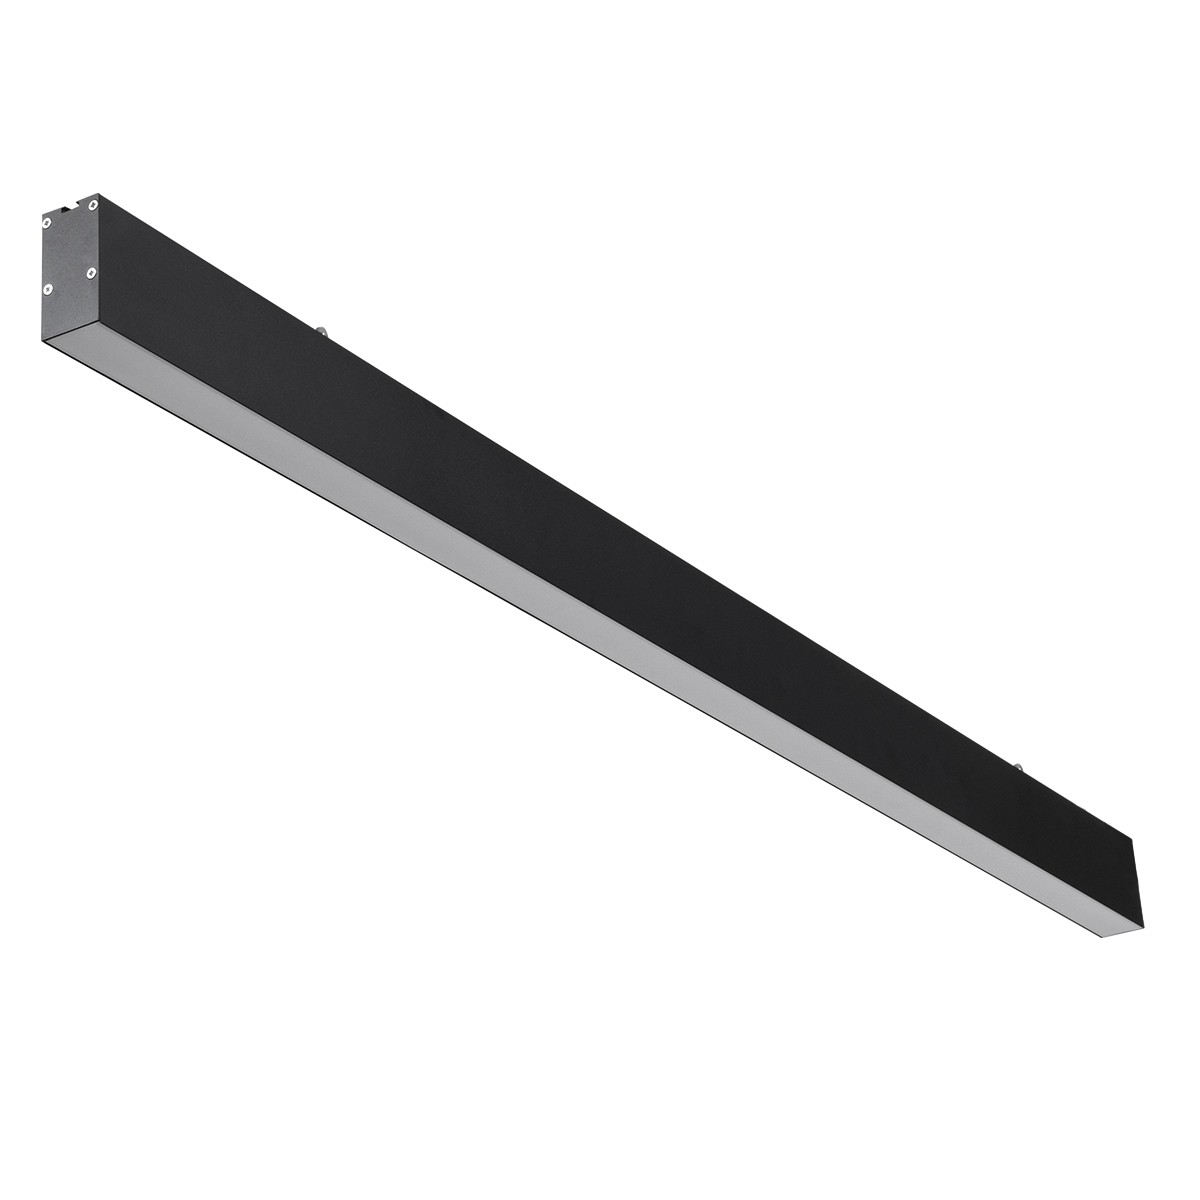 Led Γραμμικό Φωτιστικό Οροφής FELIX 54Watt Μαύρο με Εναλλαγή Φωτισμού Μ120 x Π3.5 x Υ7cm 61028-S